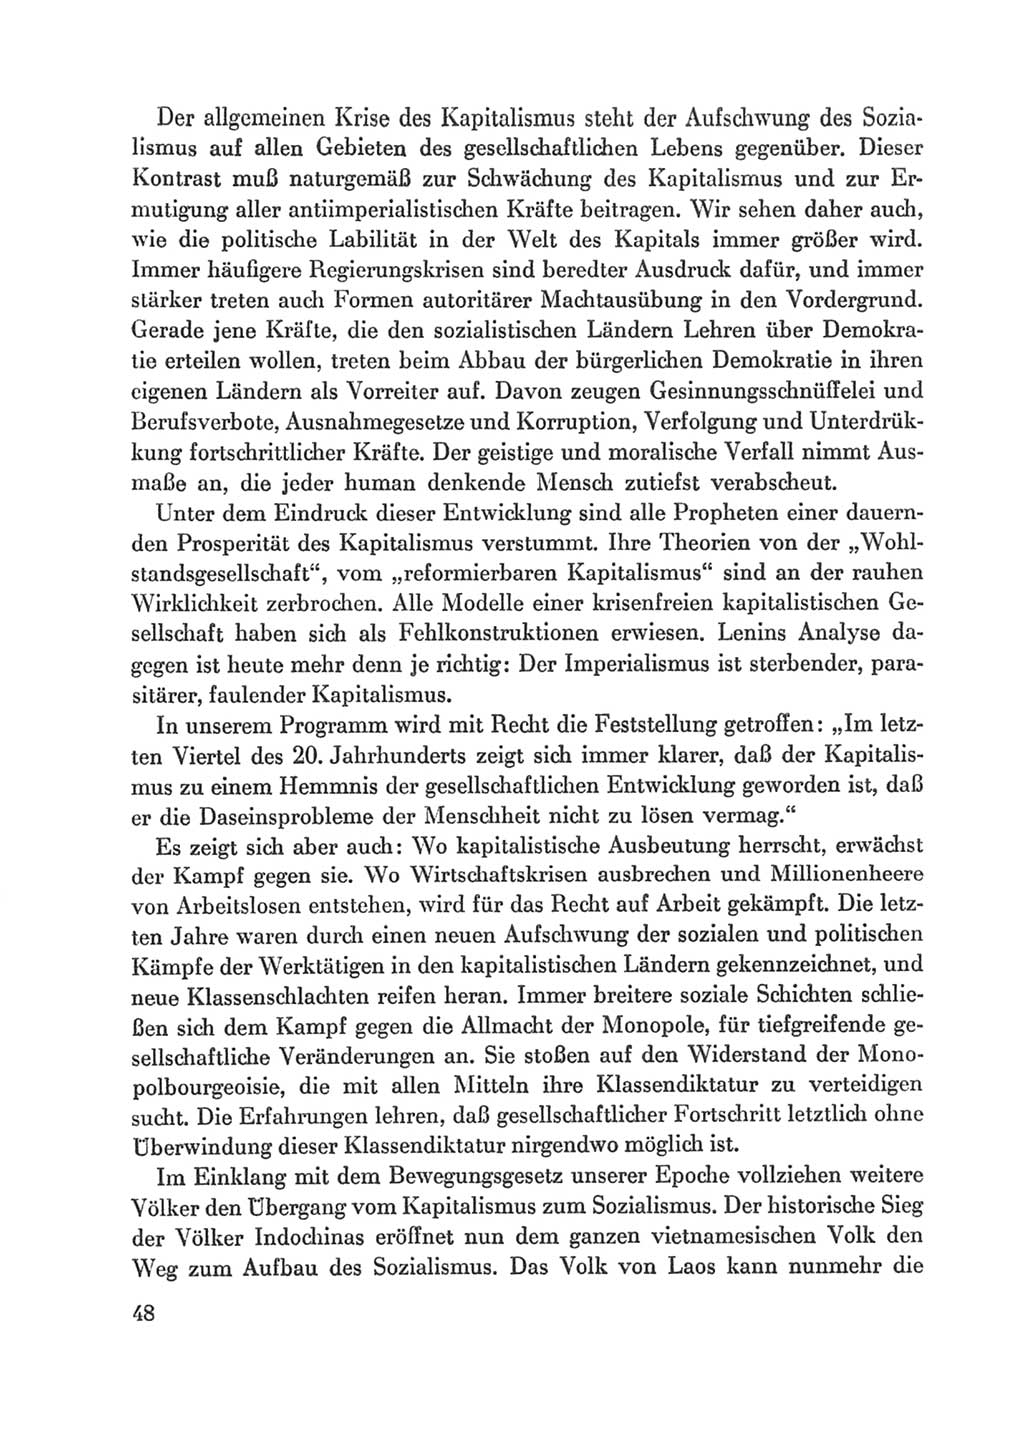 Protokoll der Verhandlungen des Ⅸ. Parteitages der Sozialistischen Einheitspartei Deutschlands (SED) [Deutsche Demokratische Republik (DDR)] 1976, Band 1, Seite 48 (Prot. Verh. Ⅸ. PT SED DDR 1976, Bd. 1, S. 48)